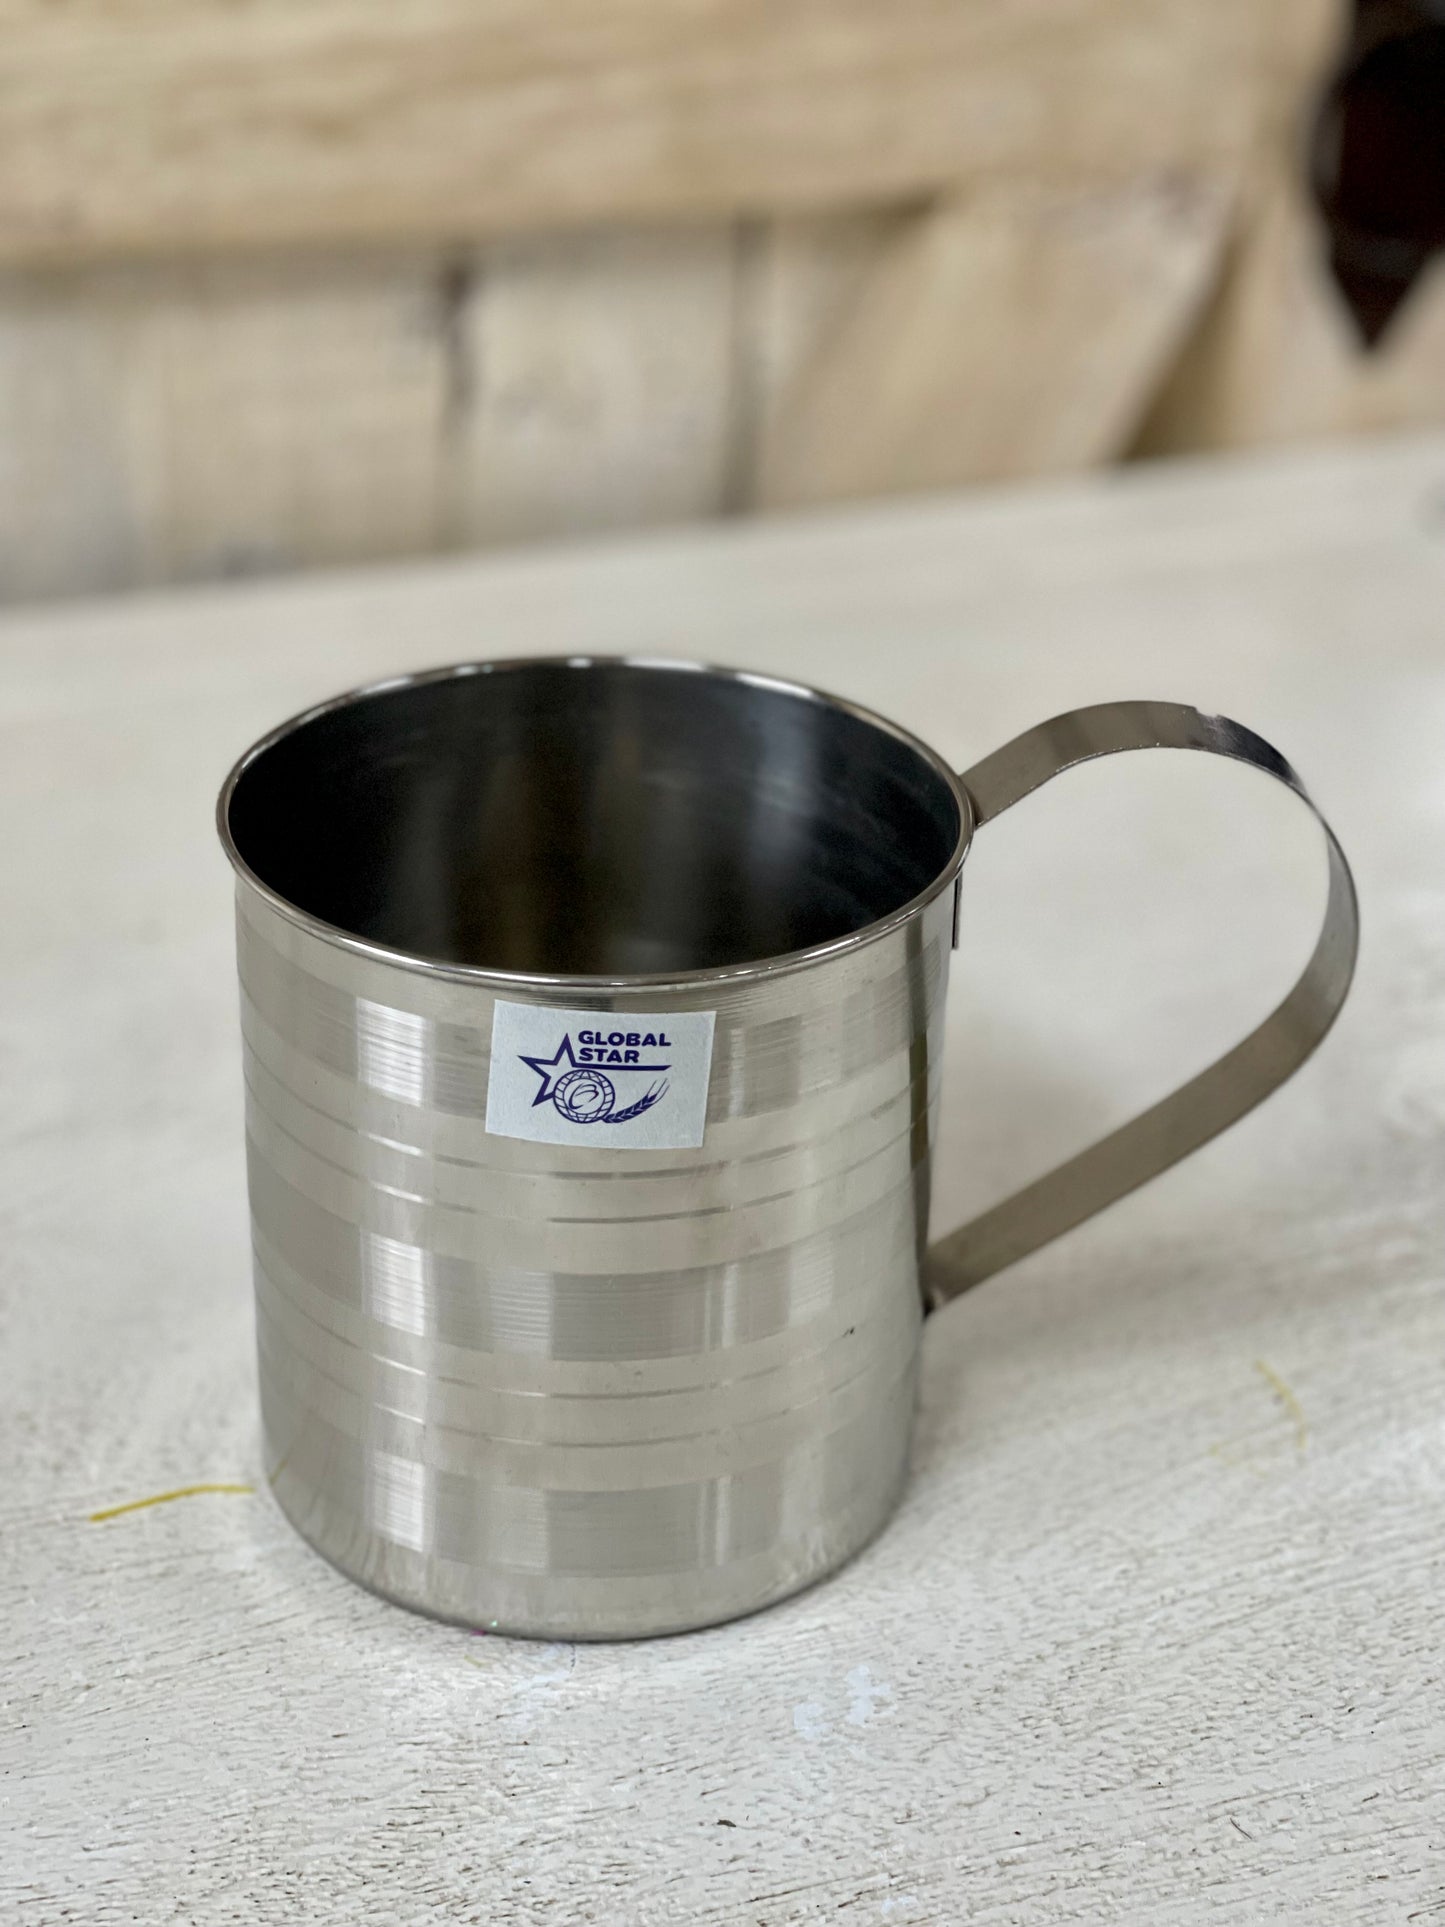 12cm Metal Mug With A Handle